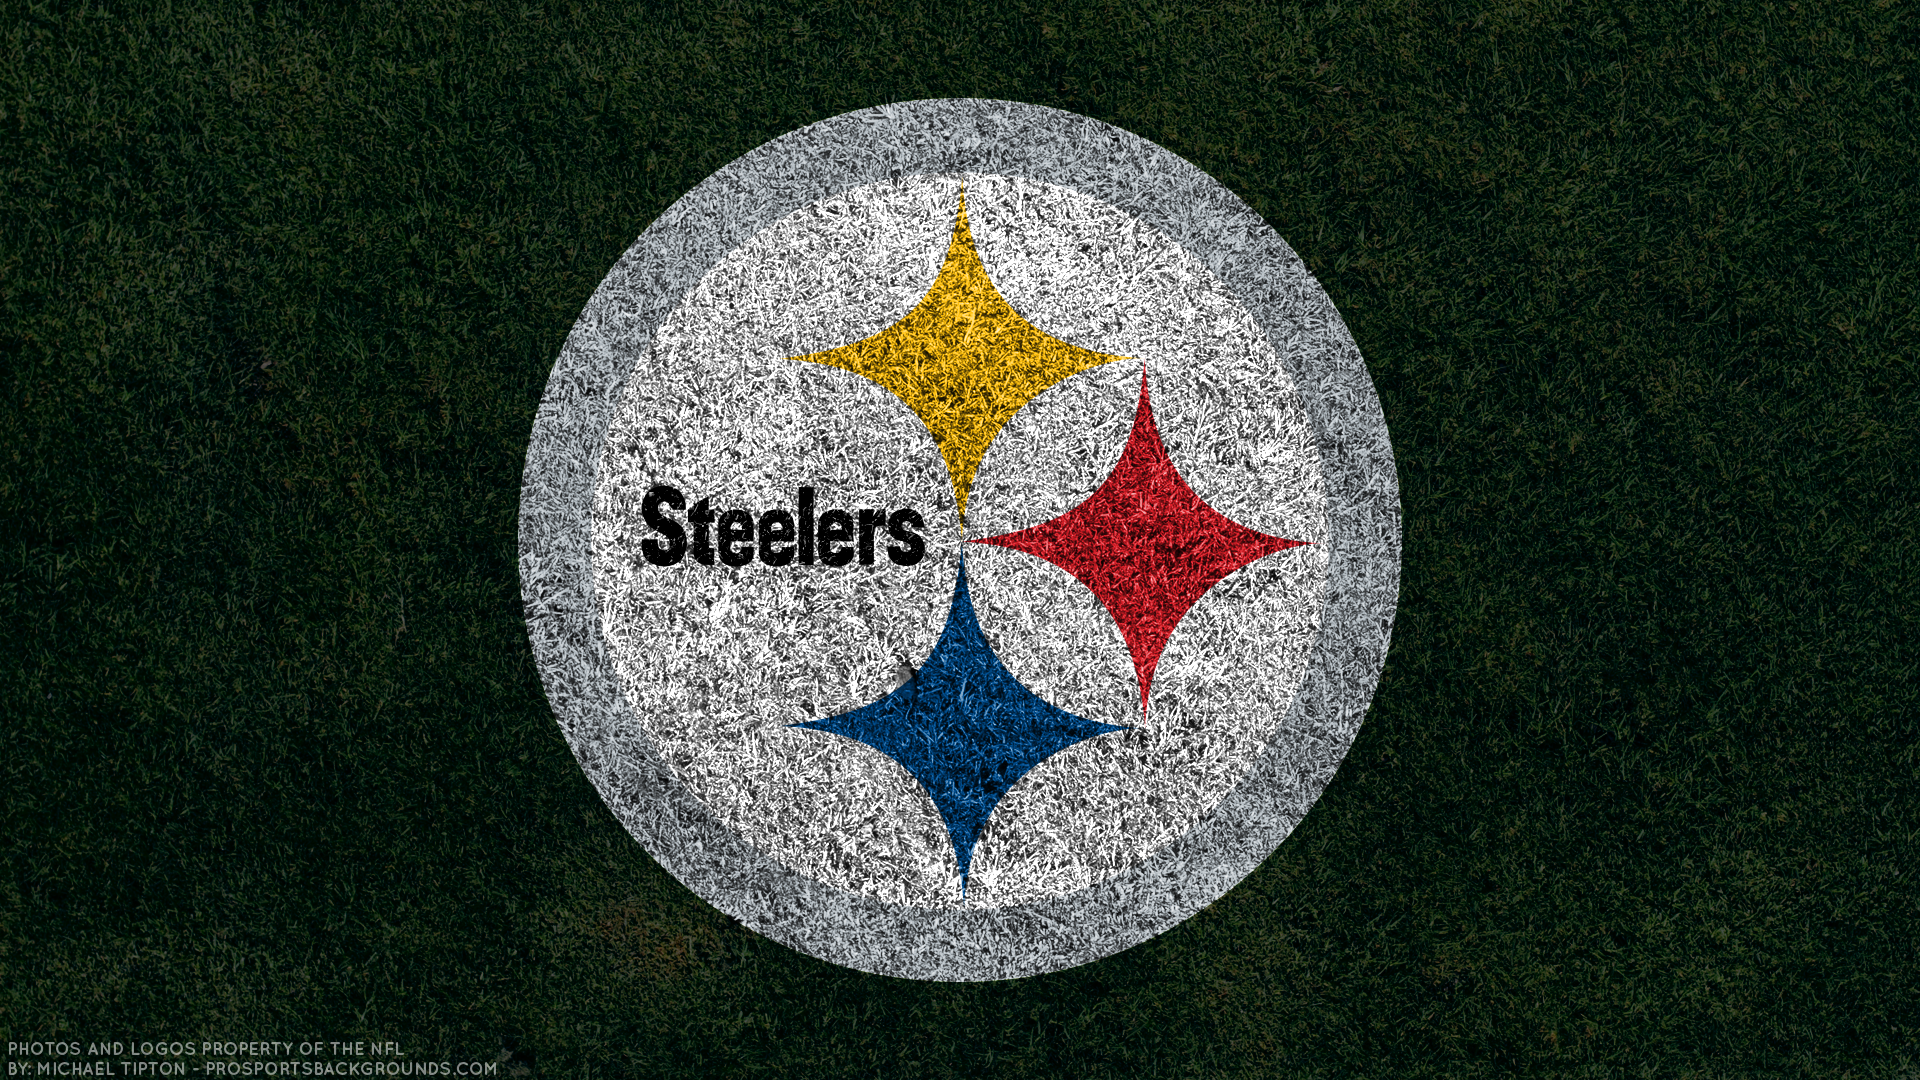 Steelers wallpaper free hd widescreen